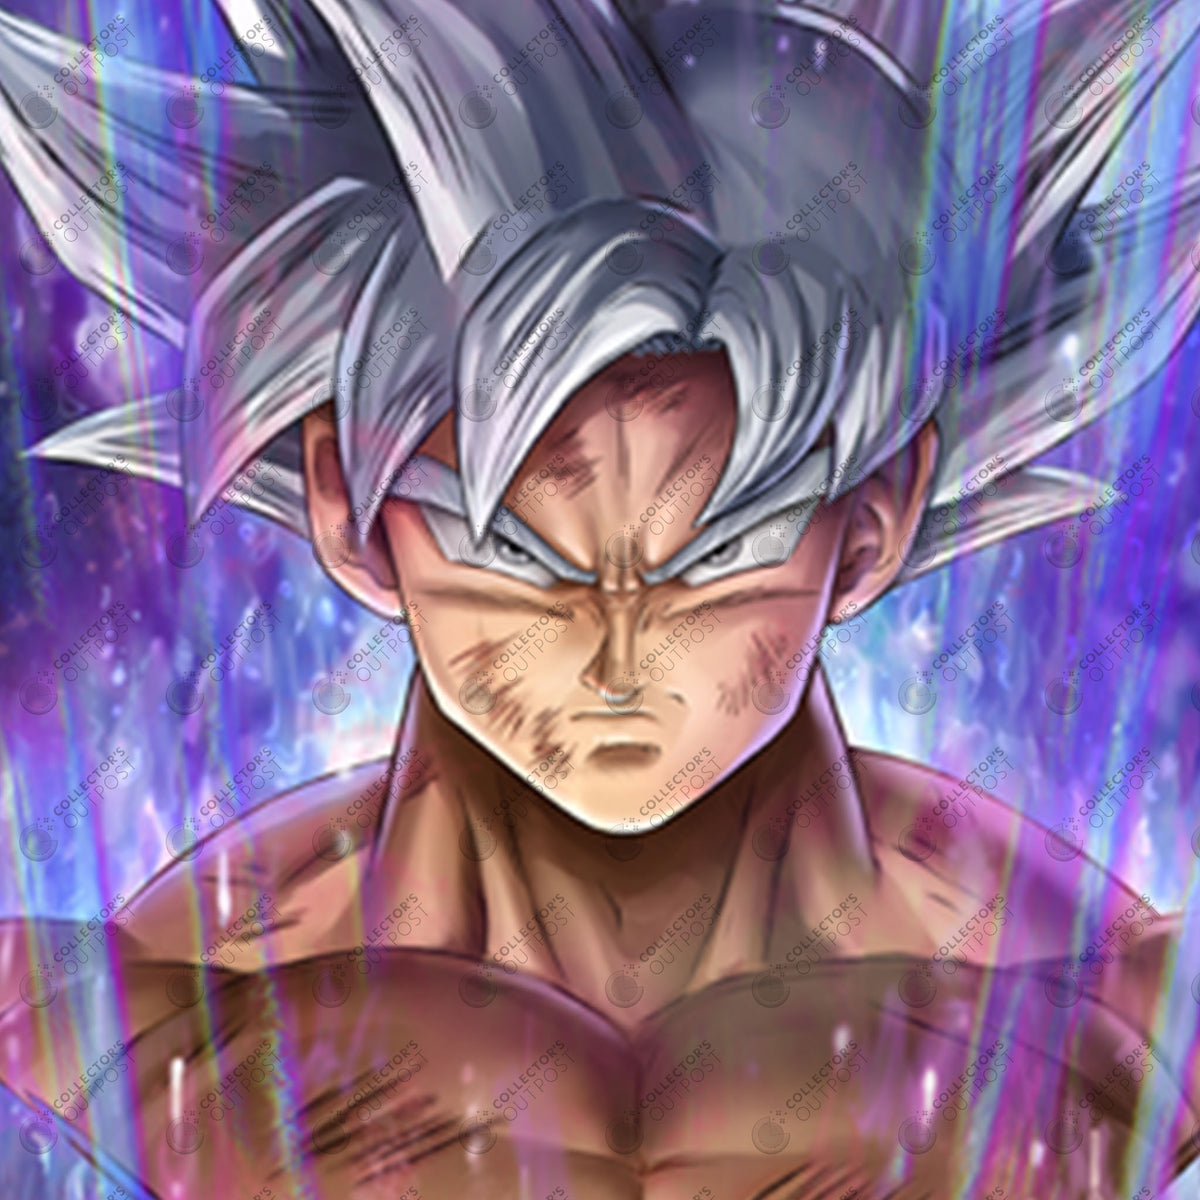 Son Goku Super Saiyan Blue Dragon Ball Z Legacy Portrait Art